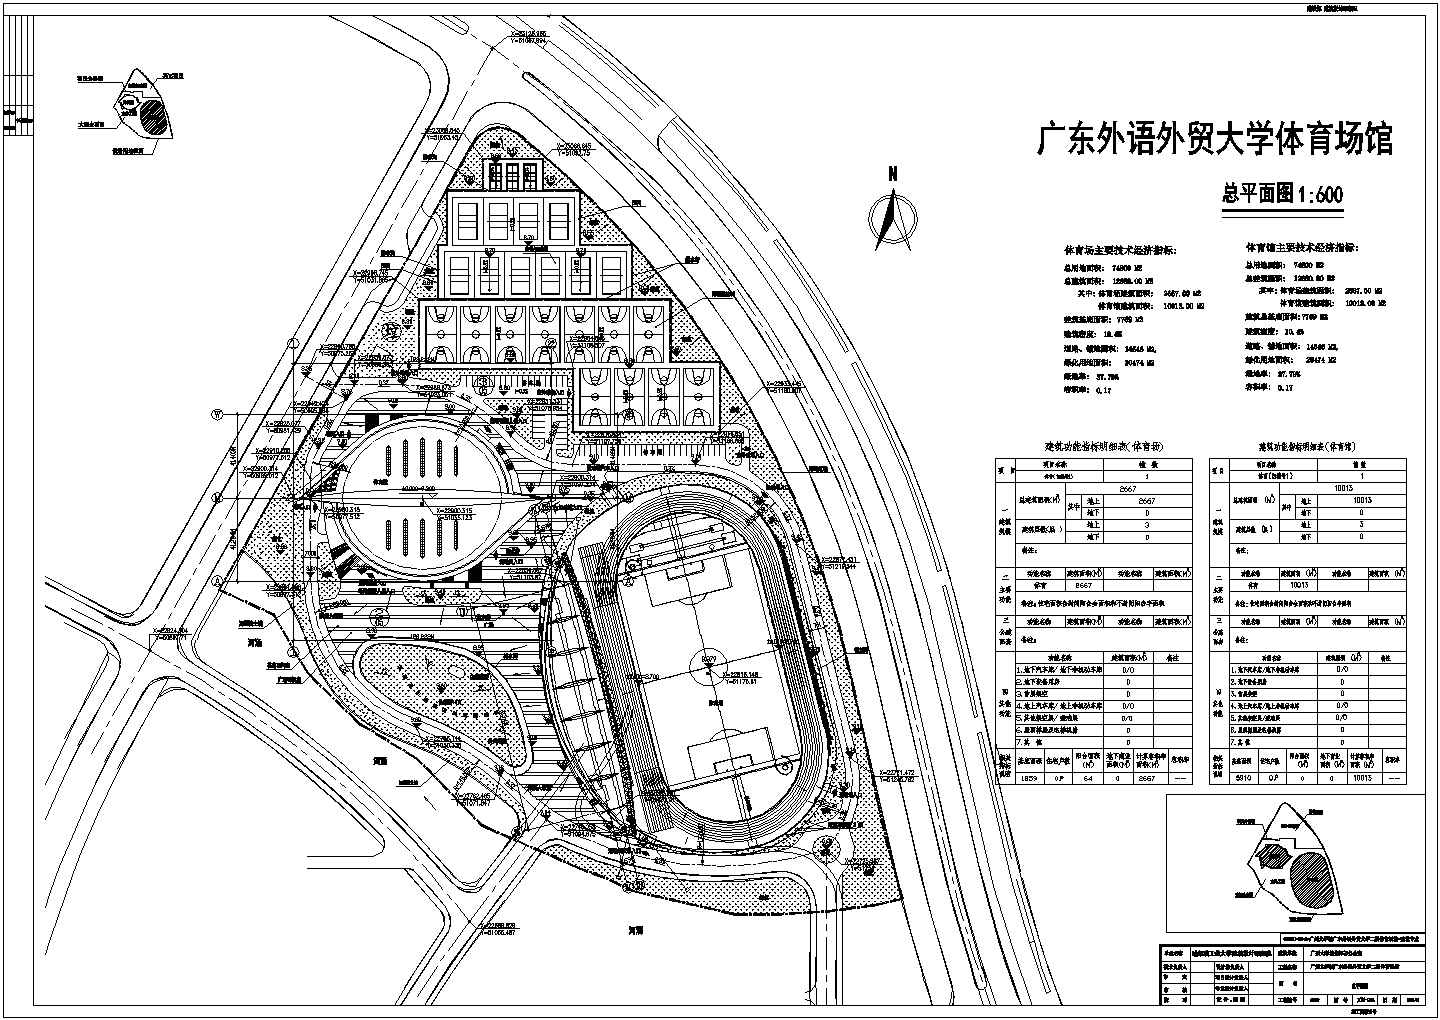 广东外语外贸大学体育场馆规划设计图